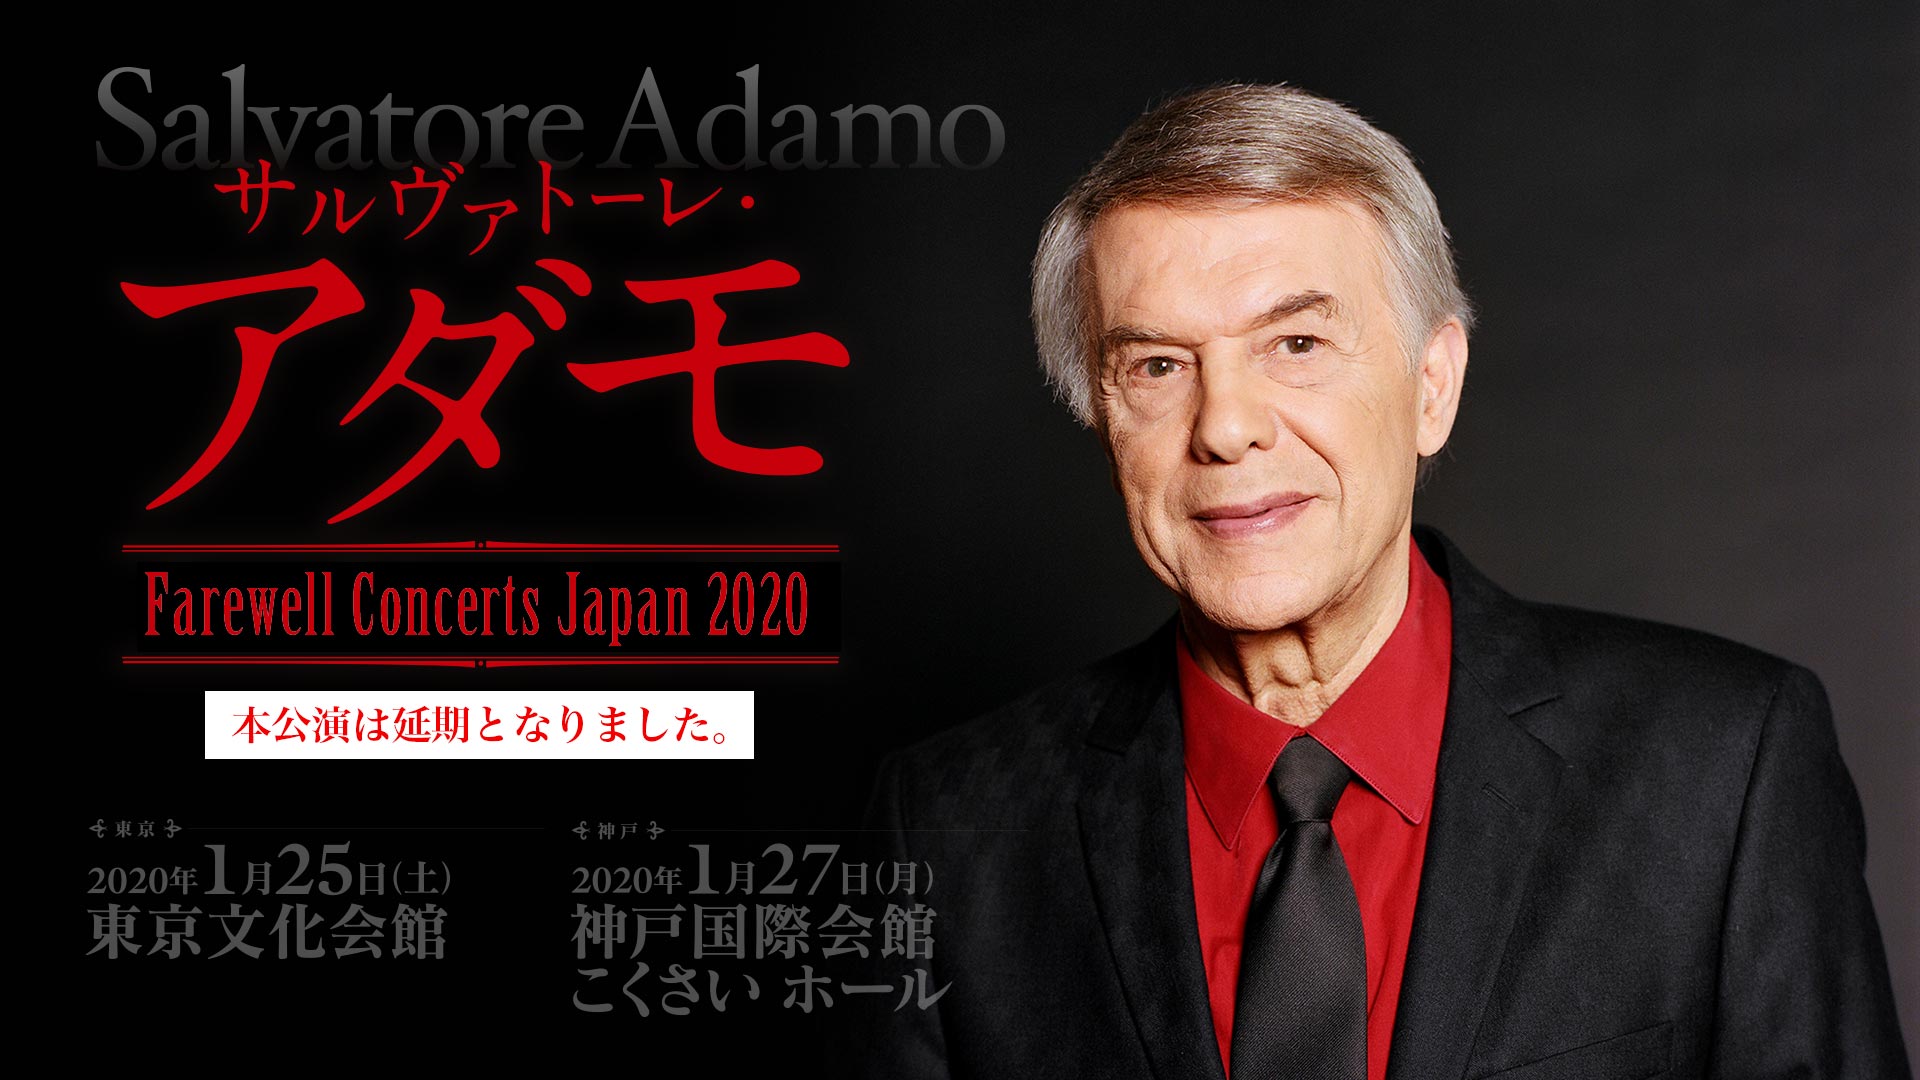 Adamo tournée Japon 2020 annulée